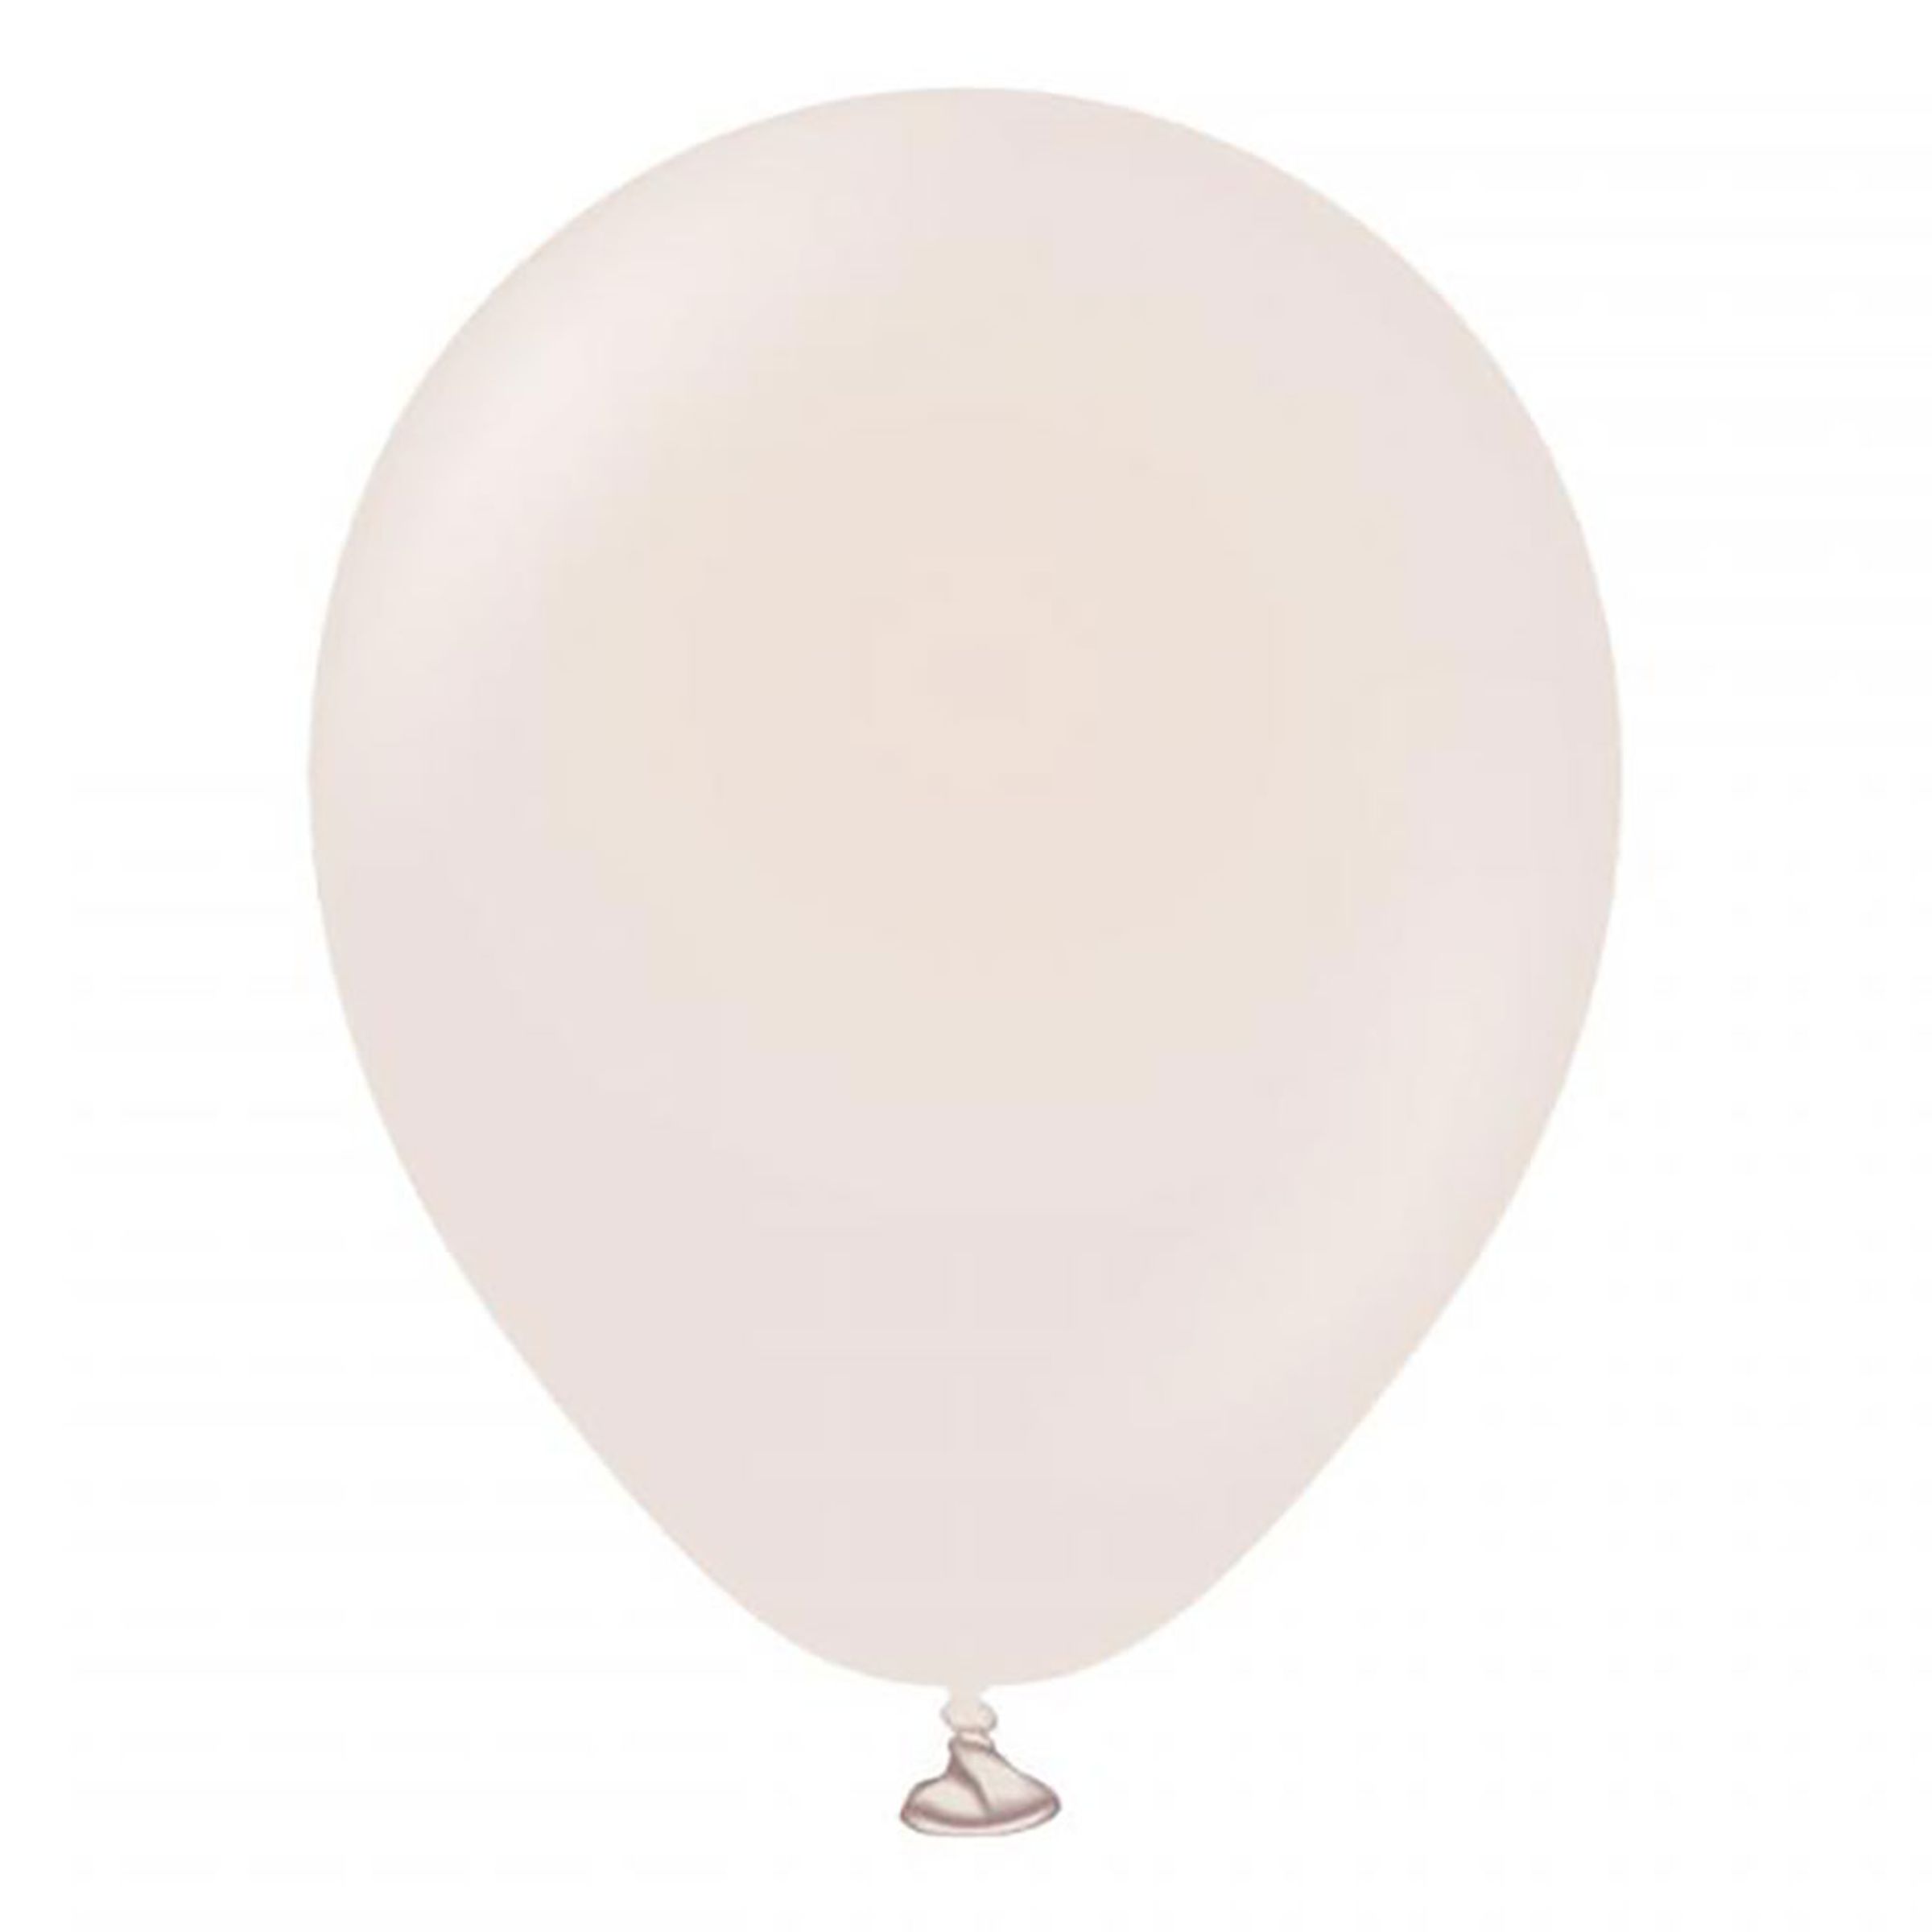 Latexballonger Professional White Sand - 100-pack